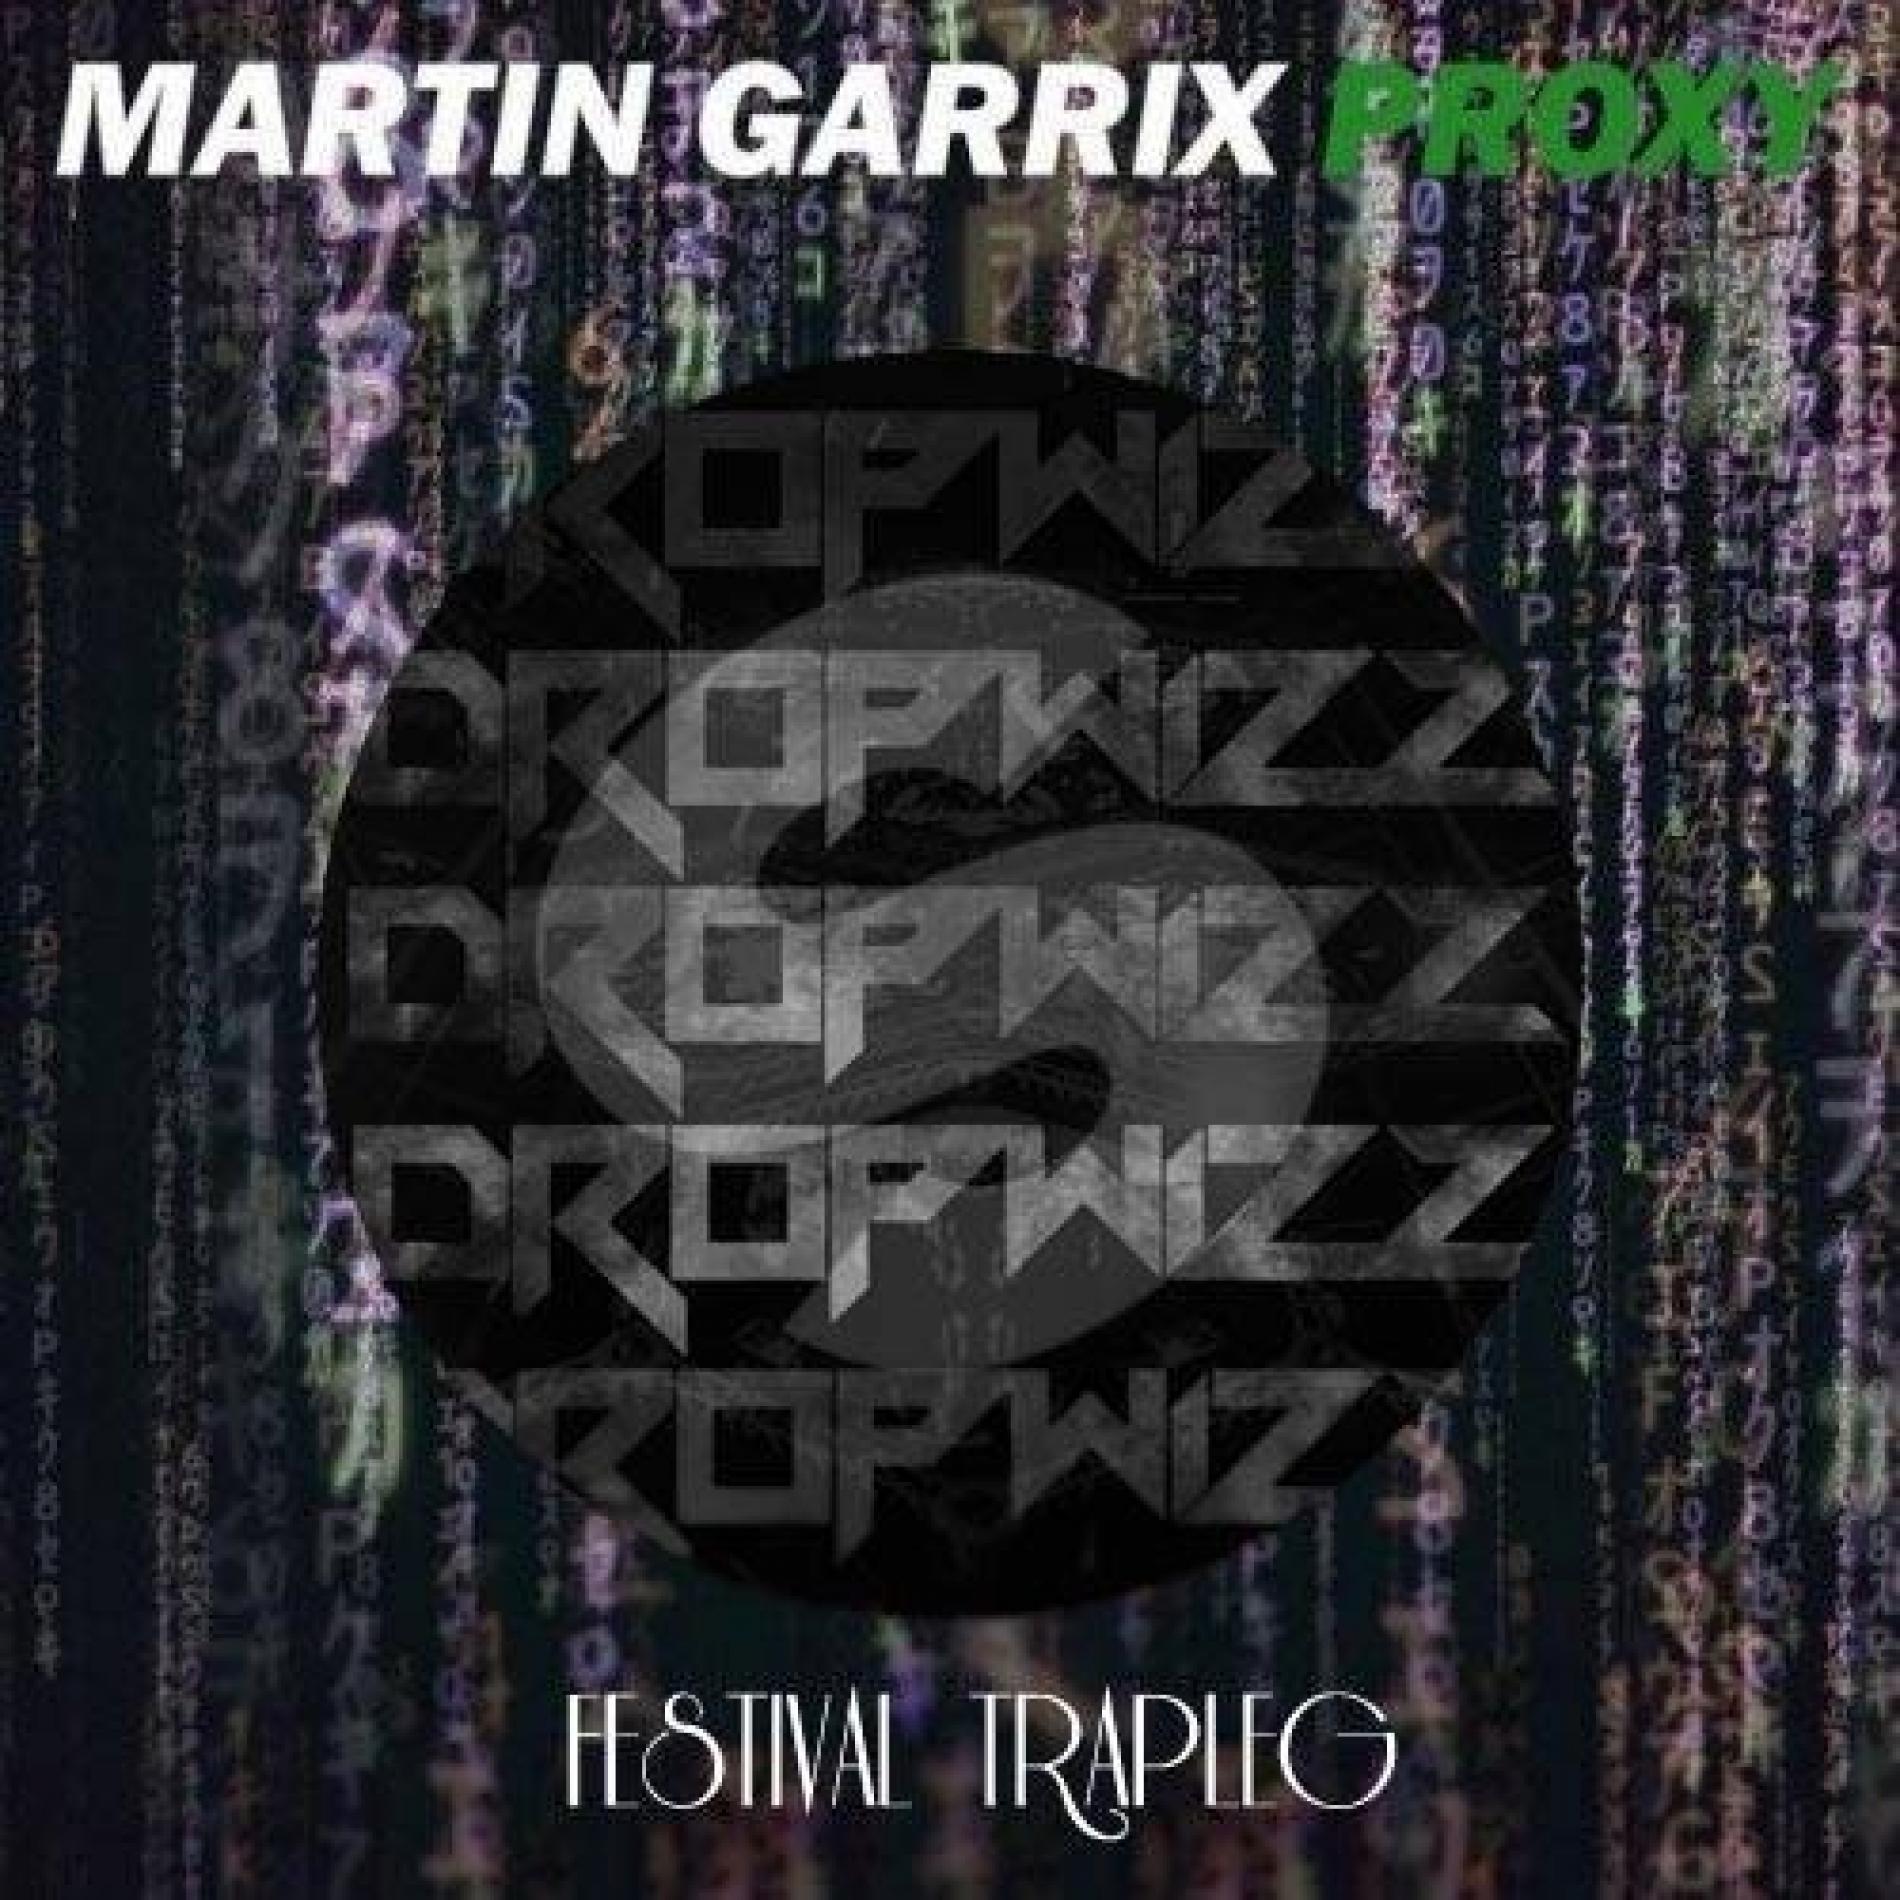 Martin Garrix – Proxy (Dropwizz Festival Trapleg)